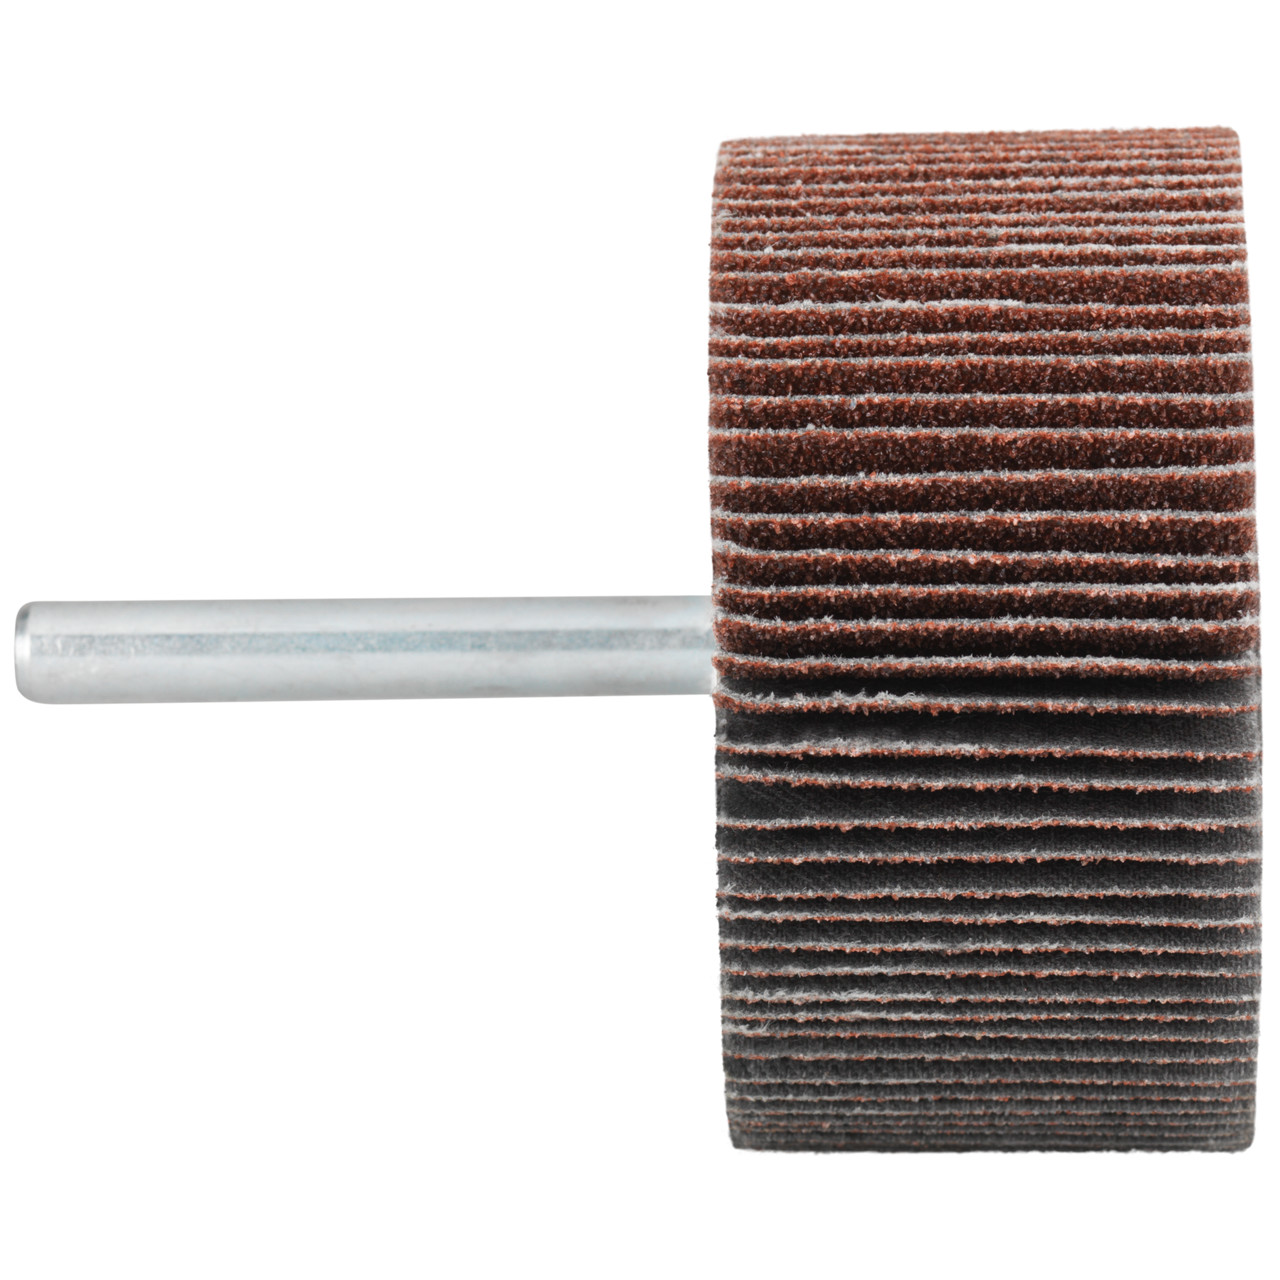 Tyrolit A-P01 C X Pennen DxD 30x10 Voor staal, roestvast staal en non-ferrometalen, P120, vorm: 52LA, Art. 909398